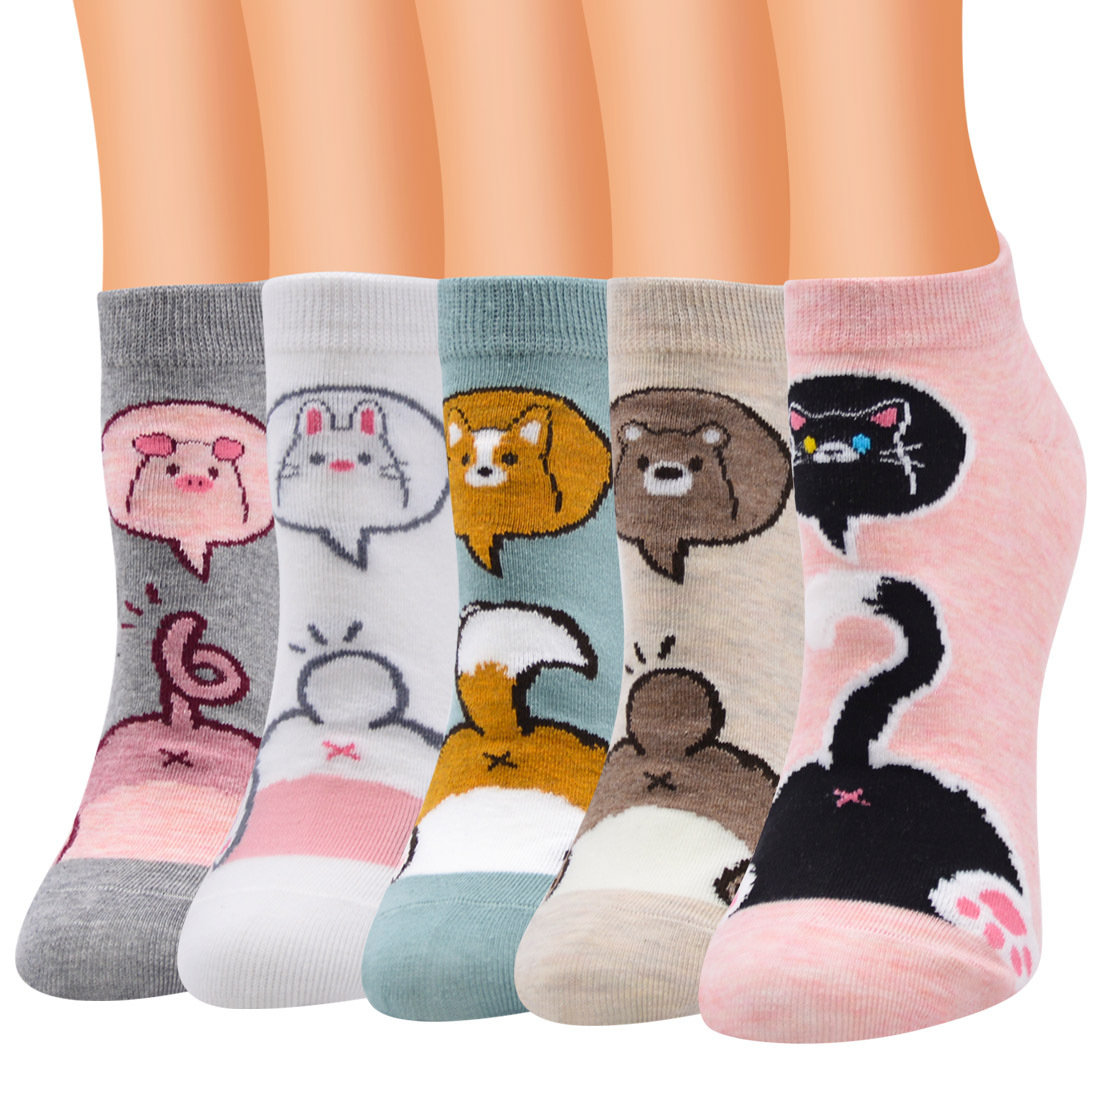 新款卡通潮流袜子批发创意棉袜动物猫咪女士船袜个性女短袜批发